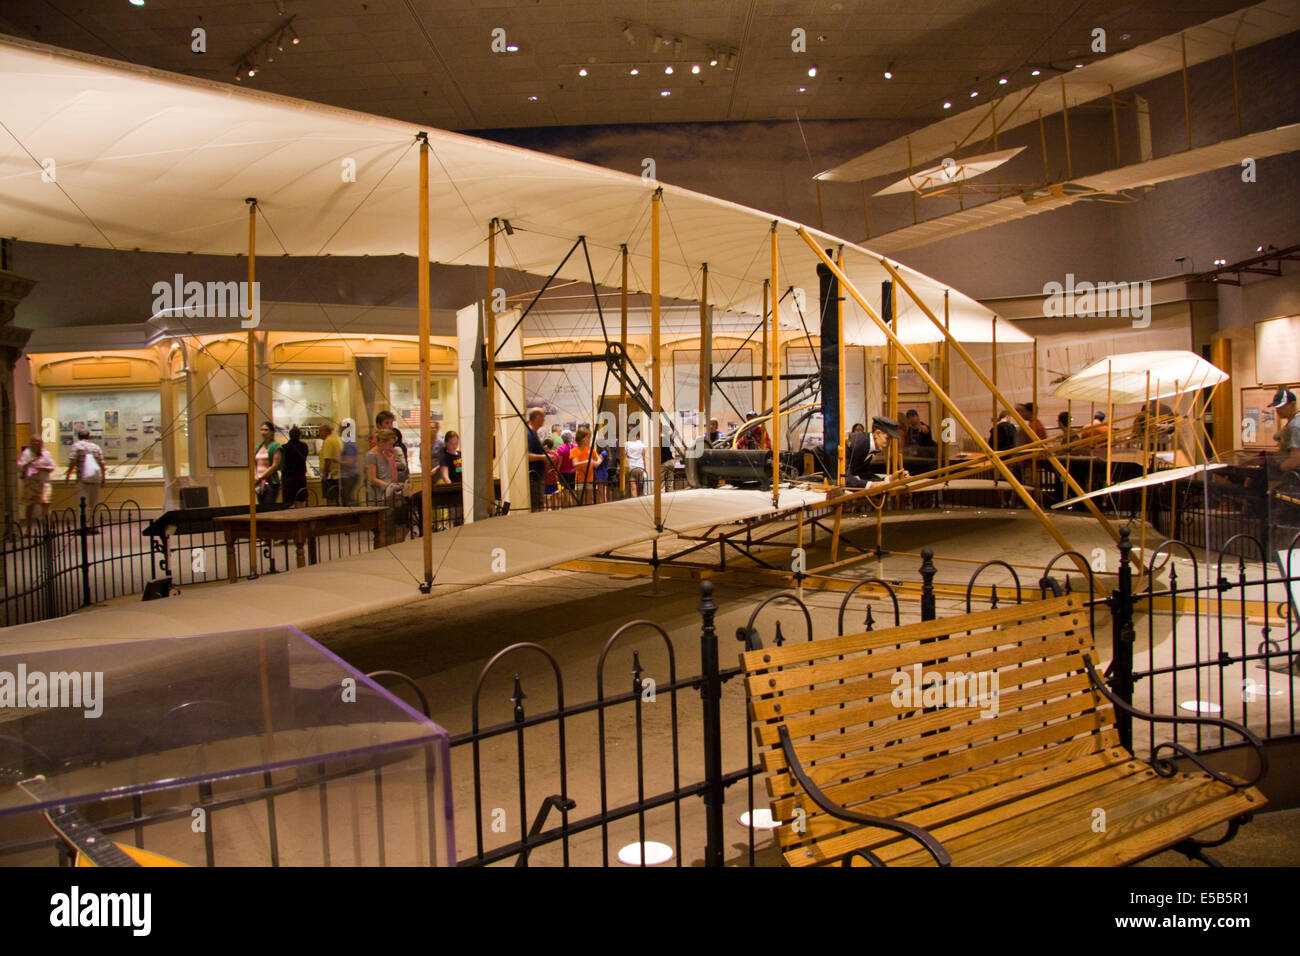 1903 Wright Flyer, le premier appareil plus lourd que l'air, l'avion motorisé pour faire un effort de maîtrise de l'avion avec un pilote à bord. Banque D'Images